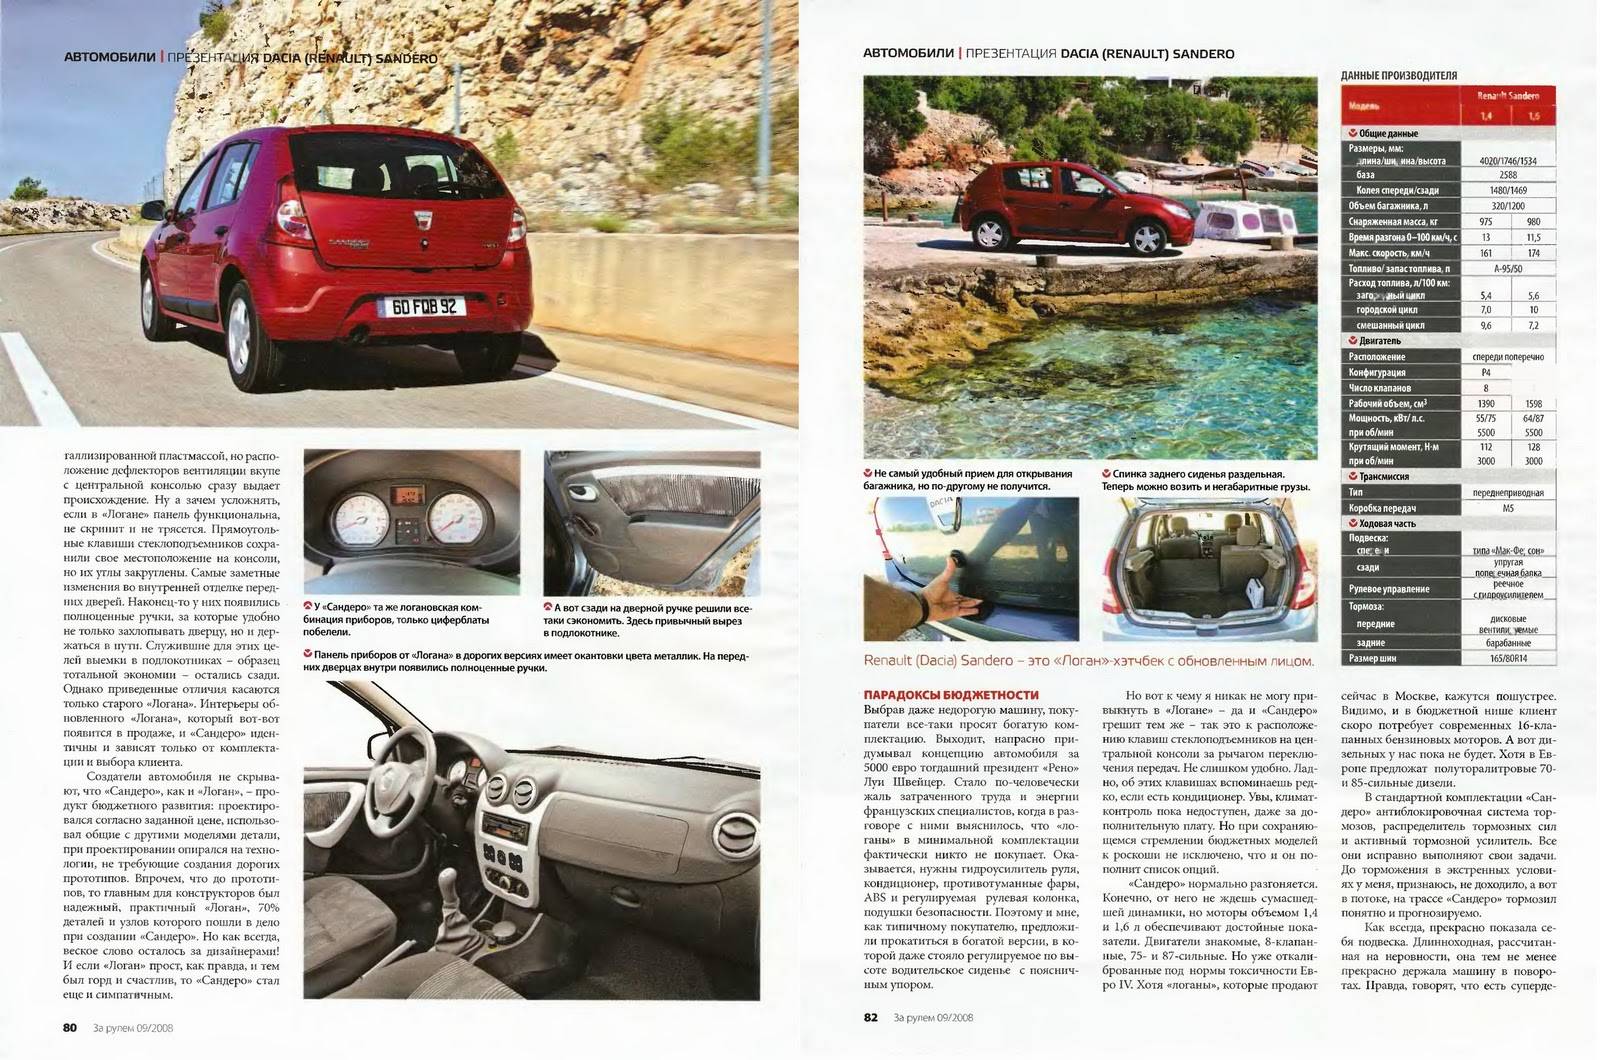 Renault — logan или sandero? сравнительный тест — журнал за рулем